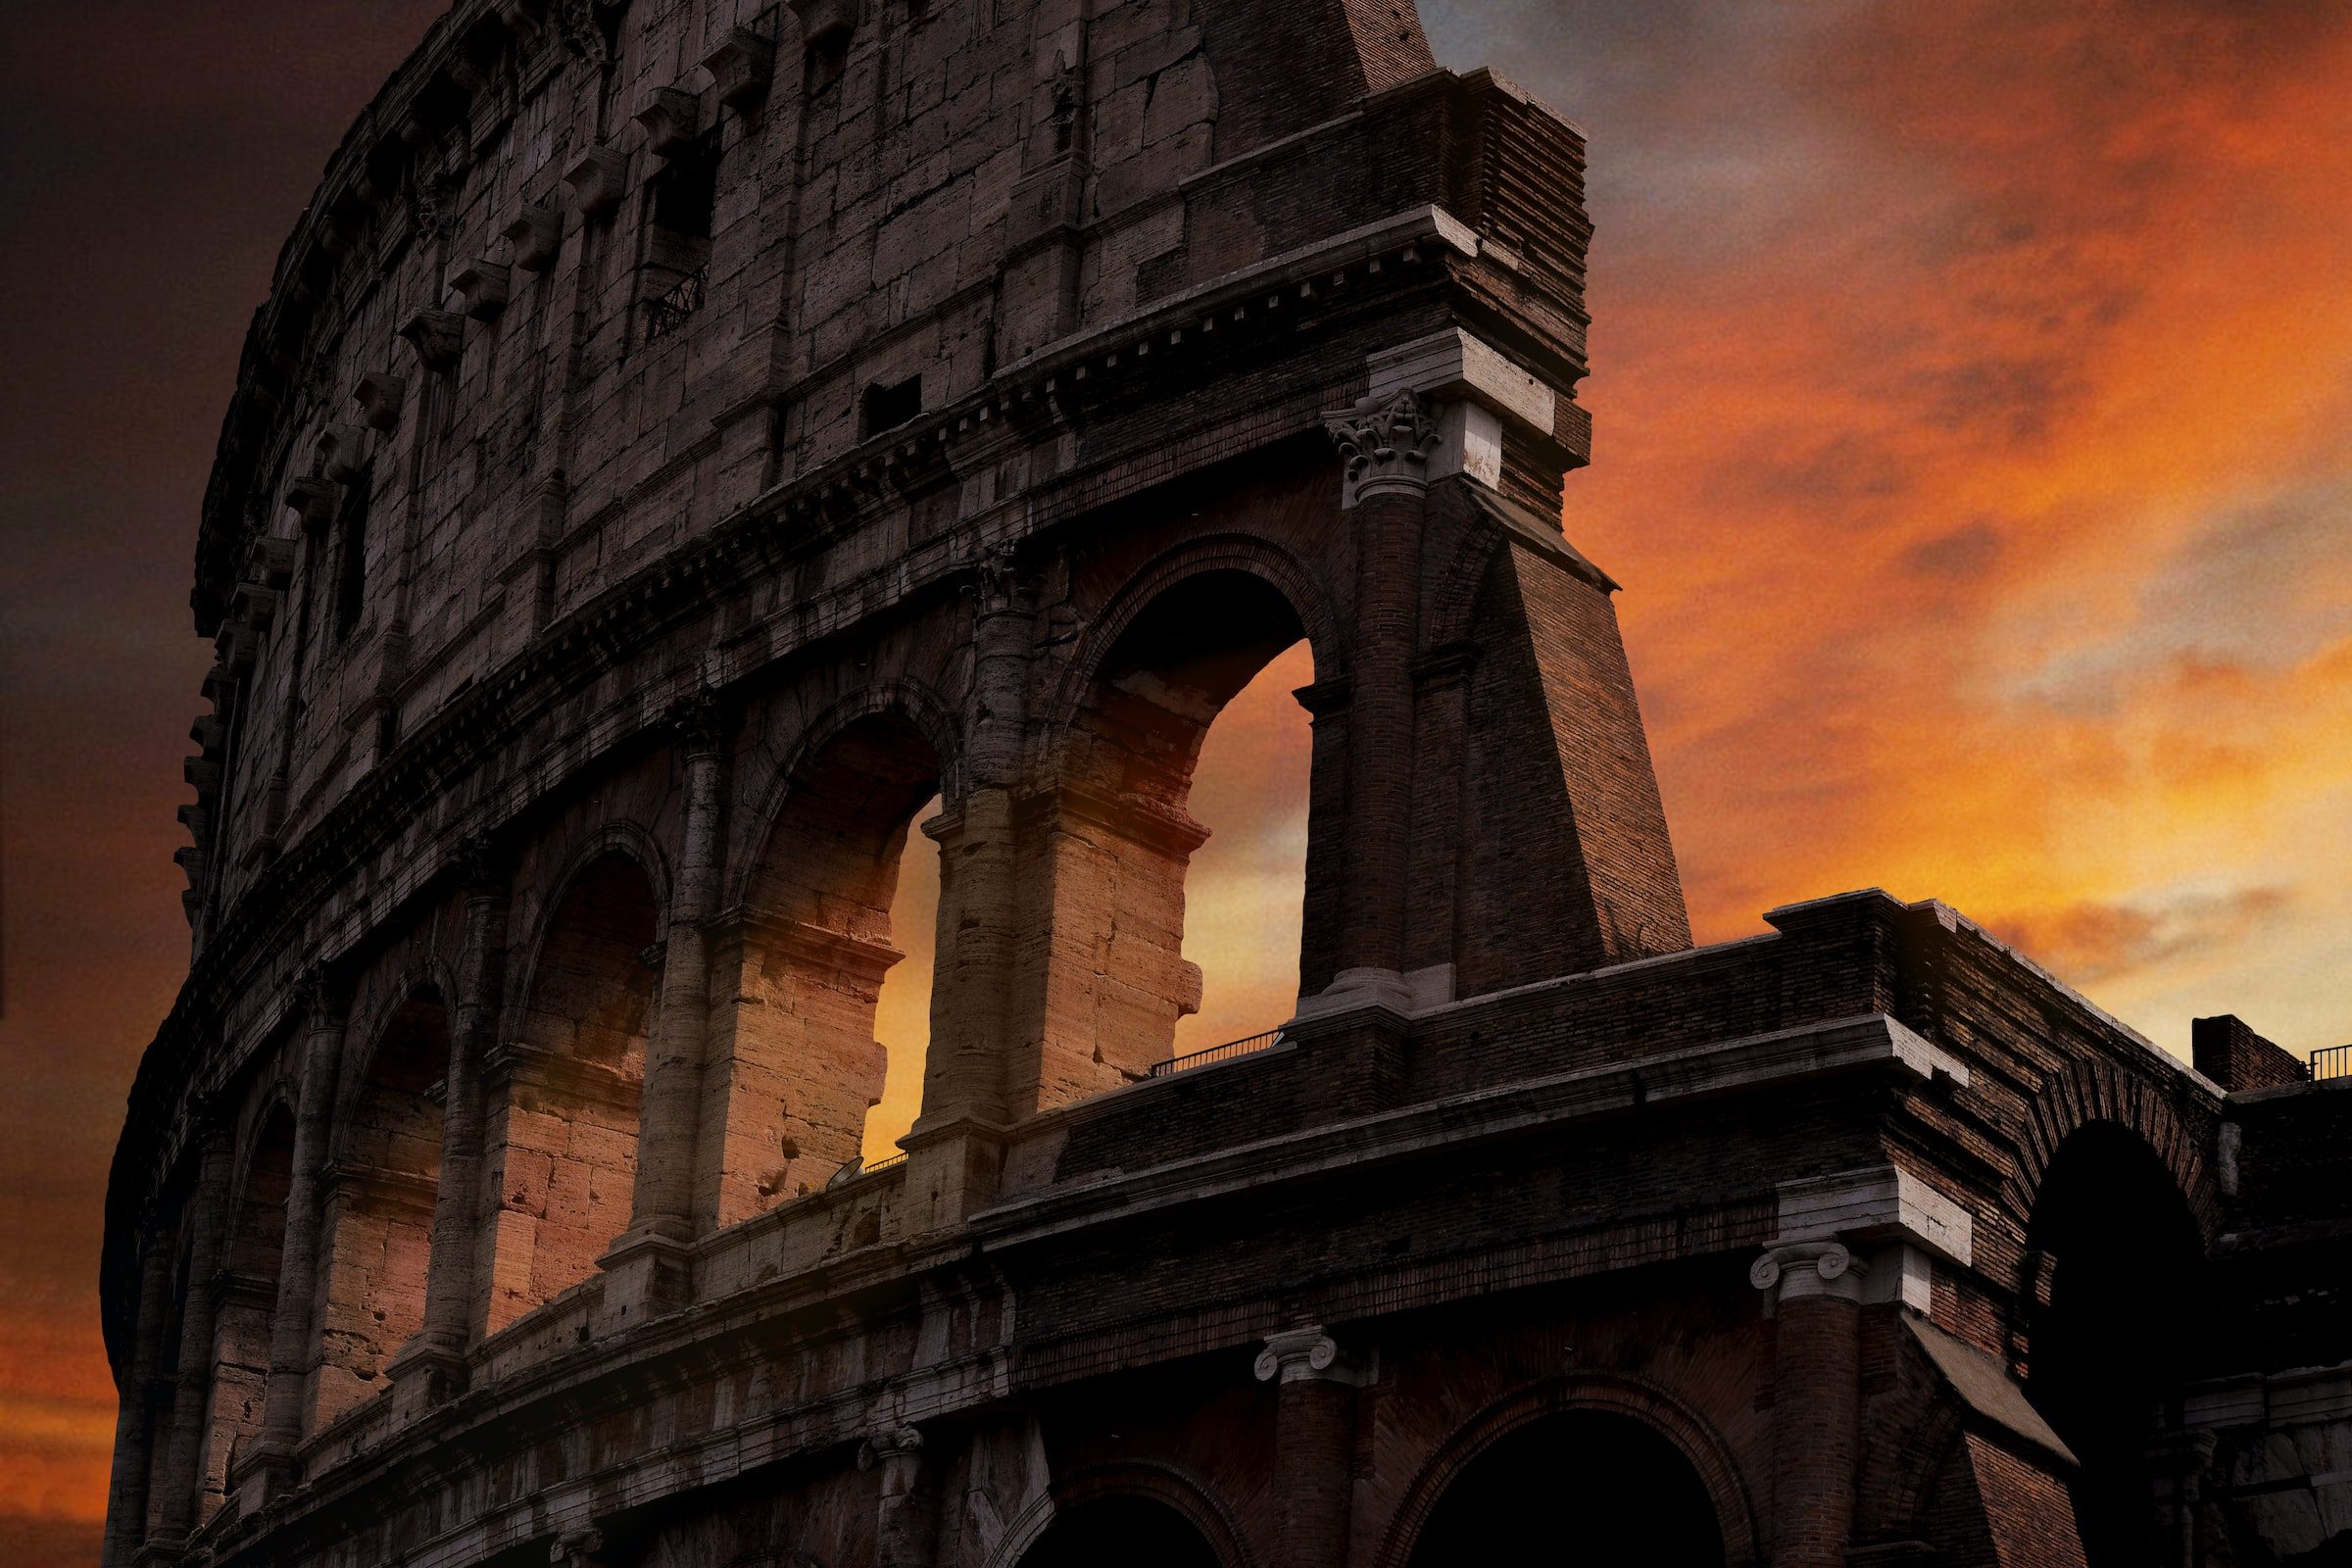 Jogo Puzzle Quebra Cabeça Coliseu Roma 500 Peças Itália - Colorido